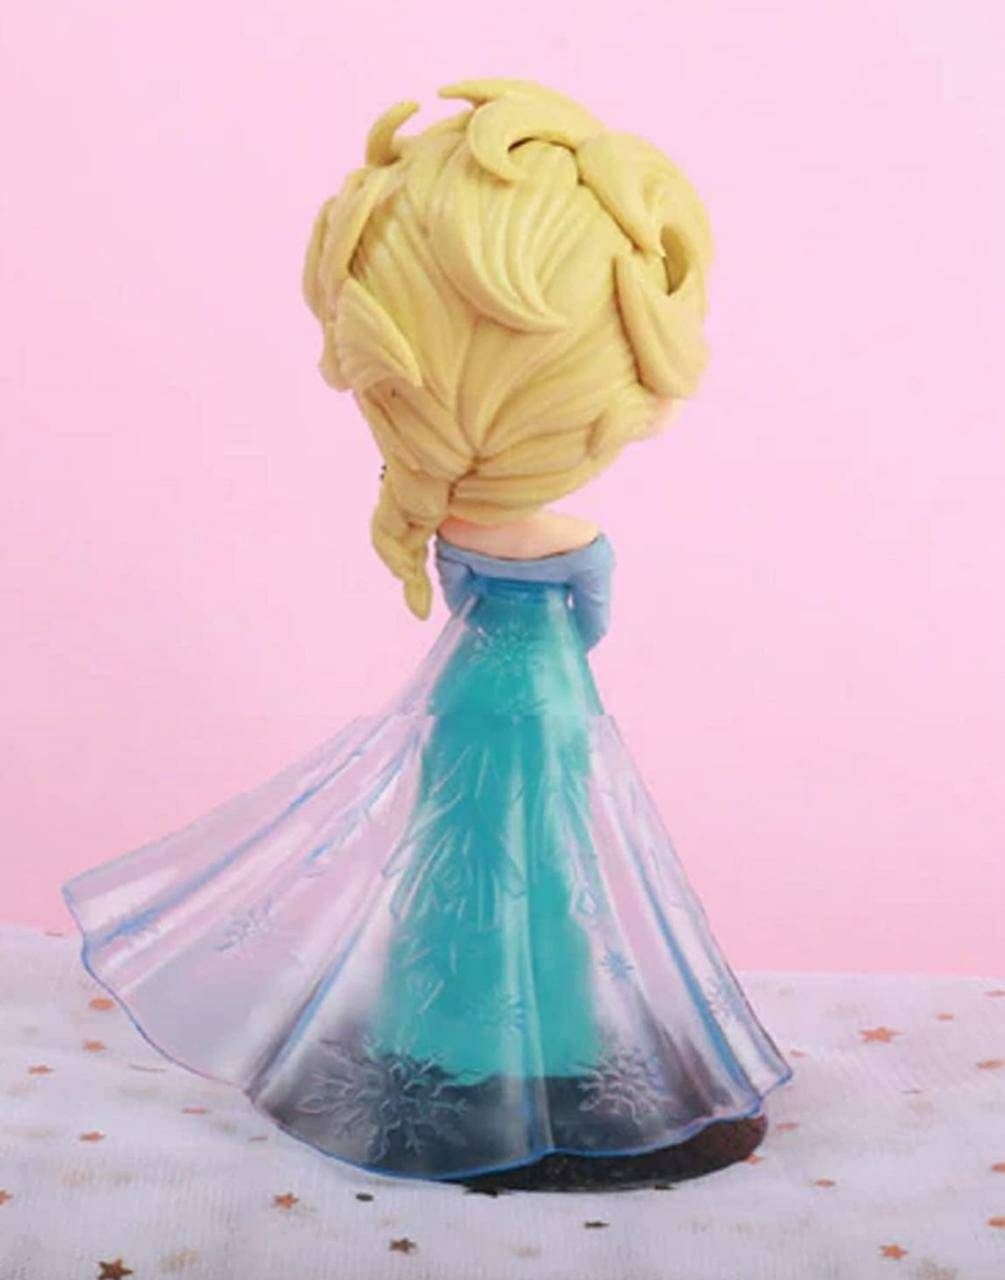 Frozen Elsa 3D Cake Topper

SUR 246